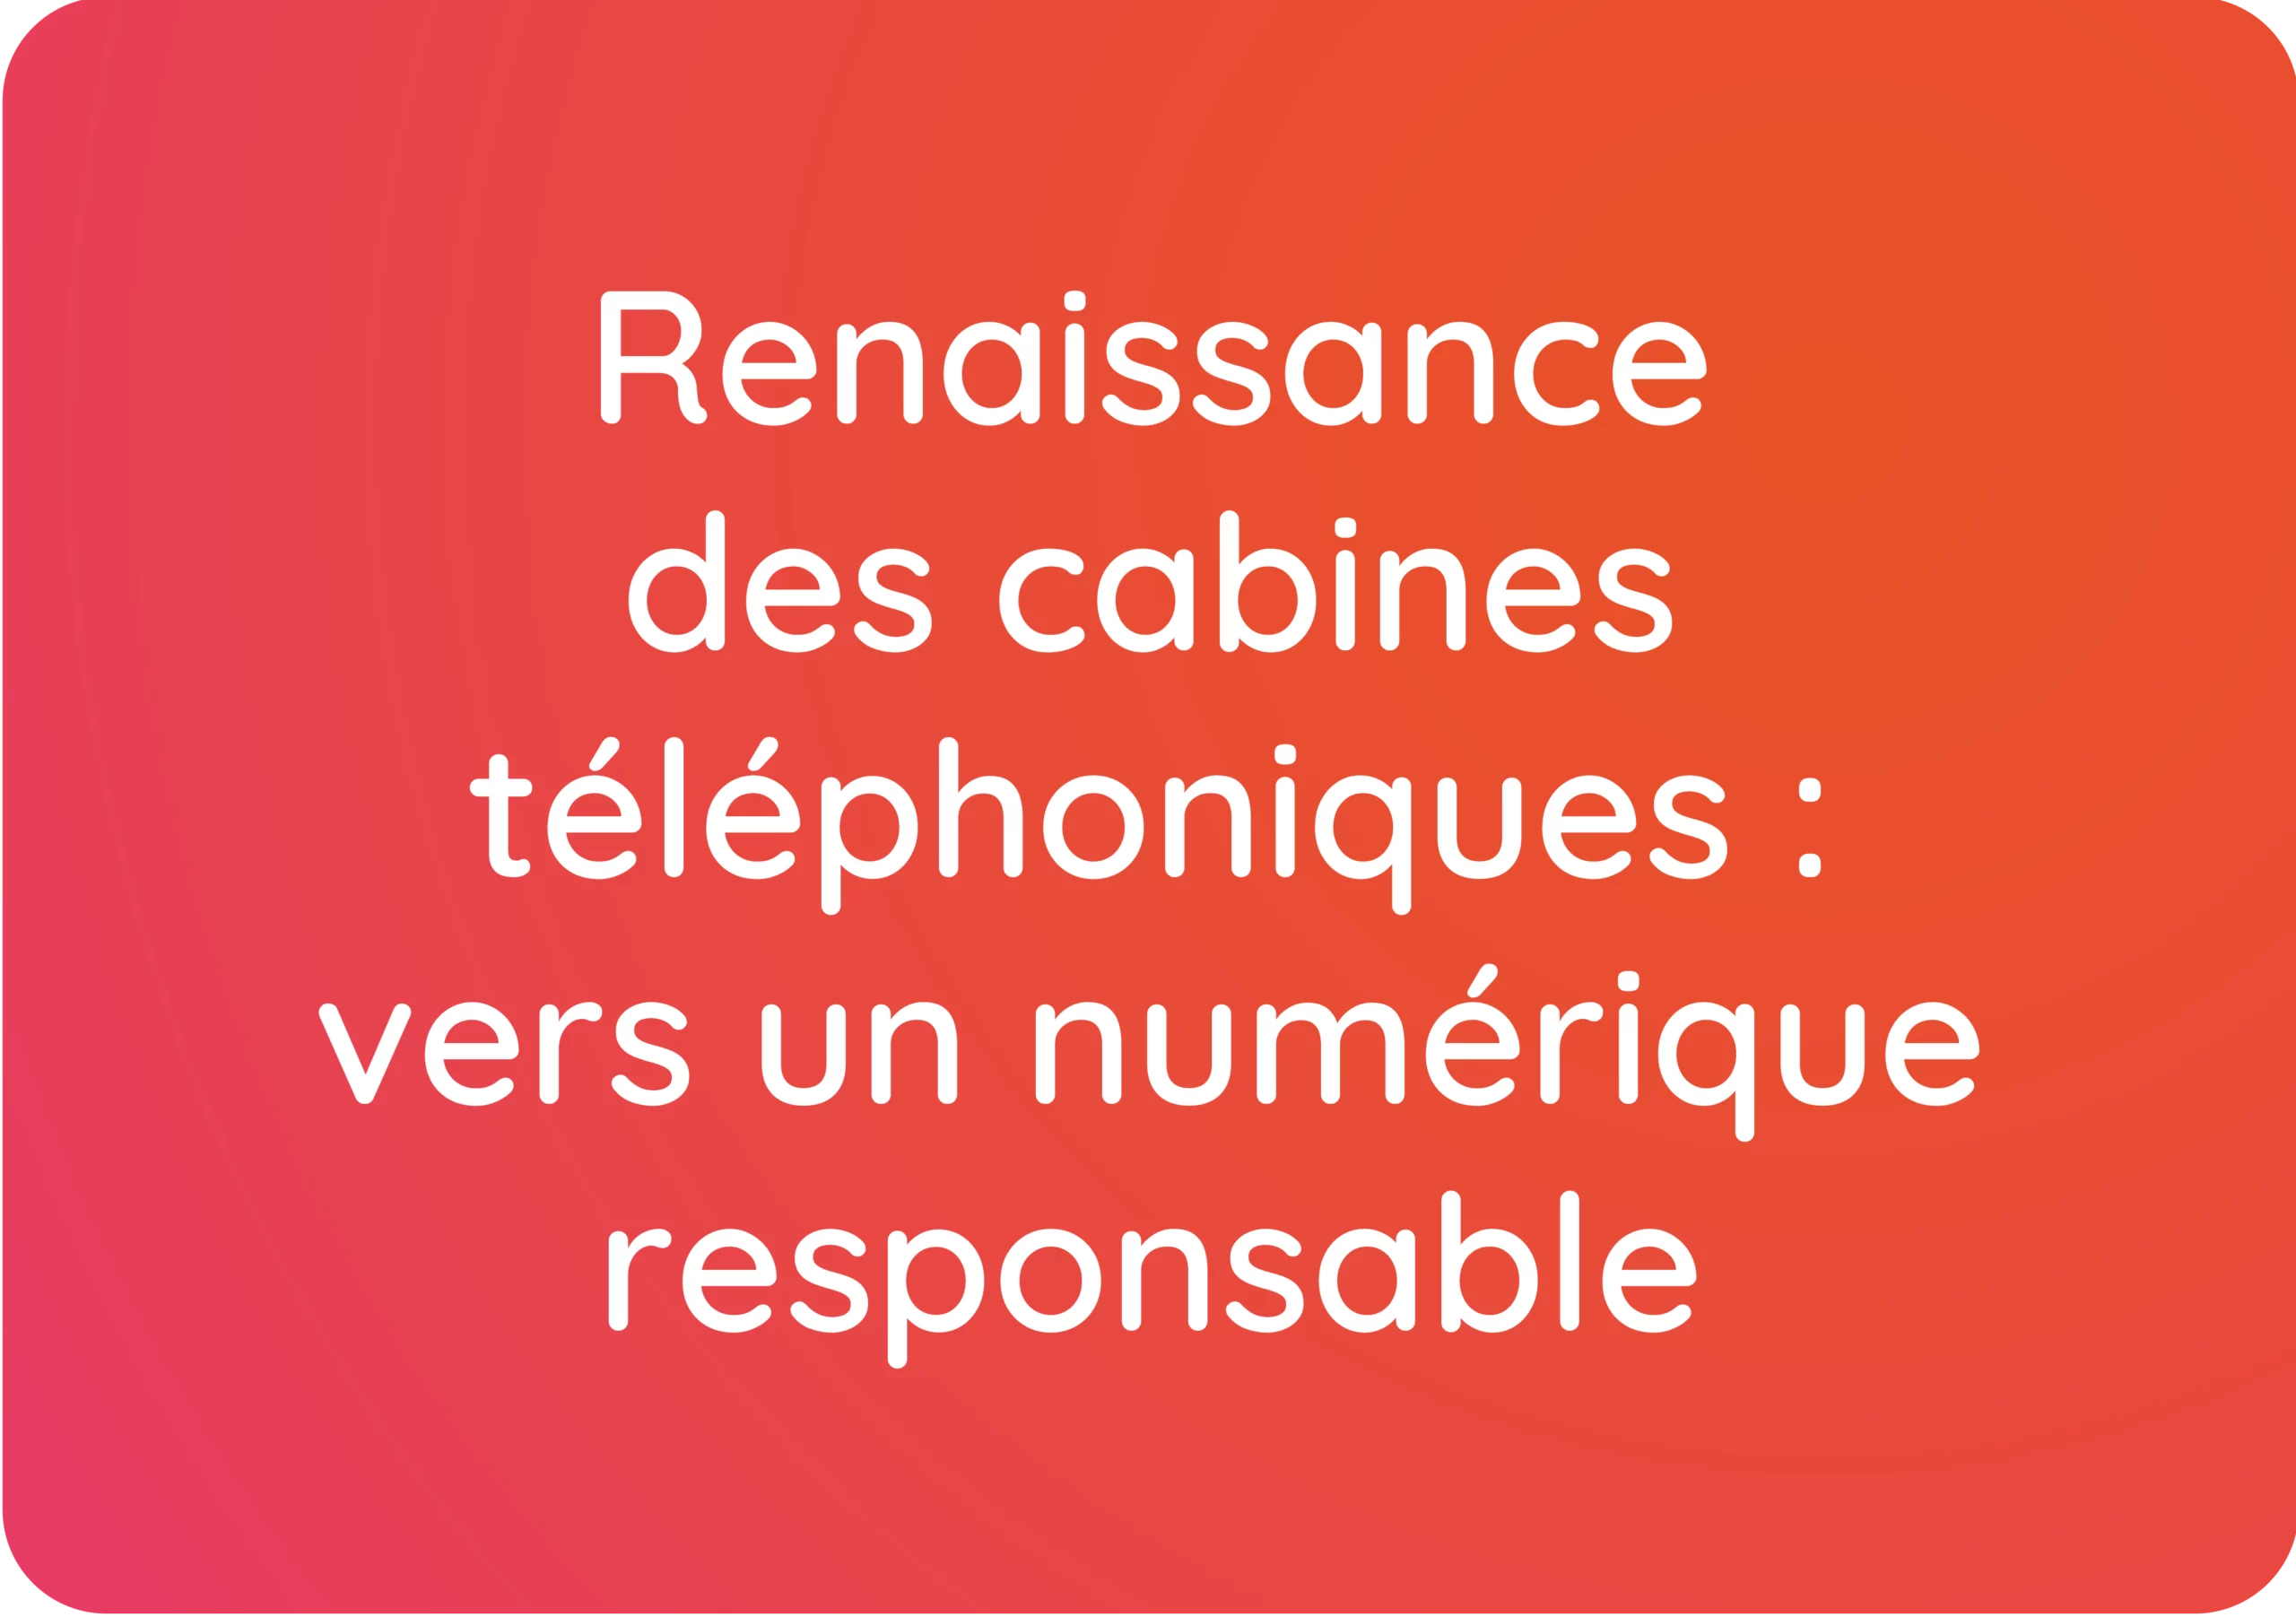 Renaissance des cabines téléphoniques : vers un numérique responsable